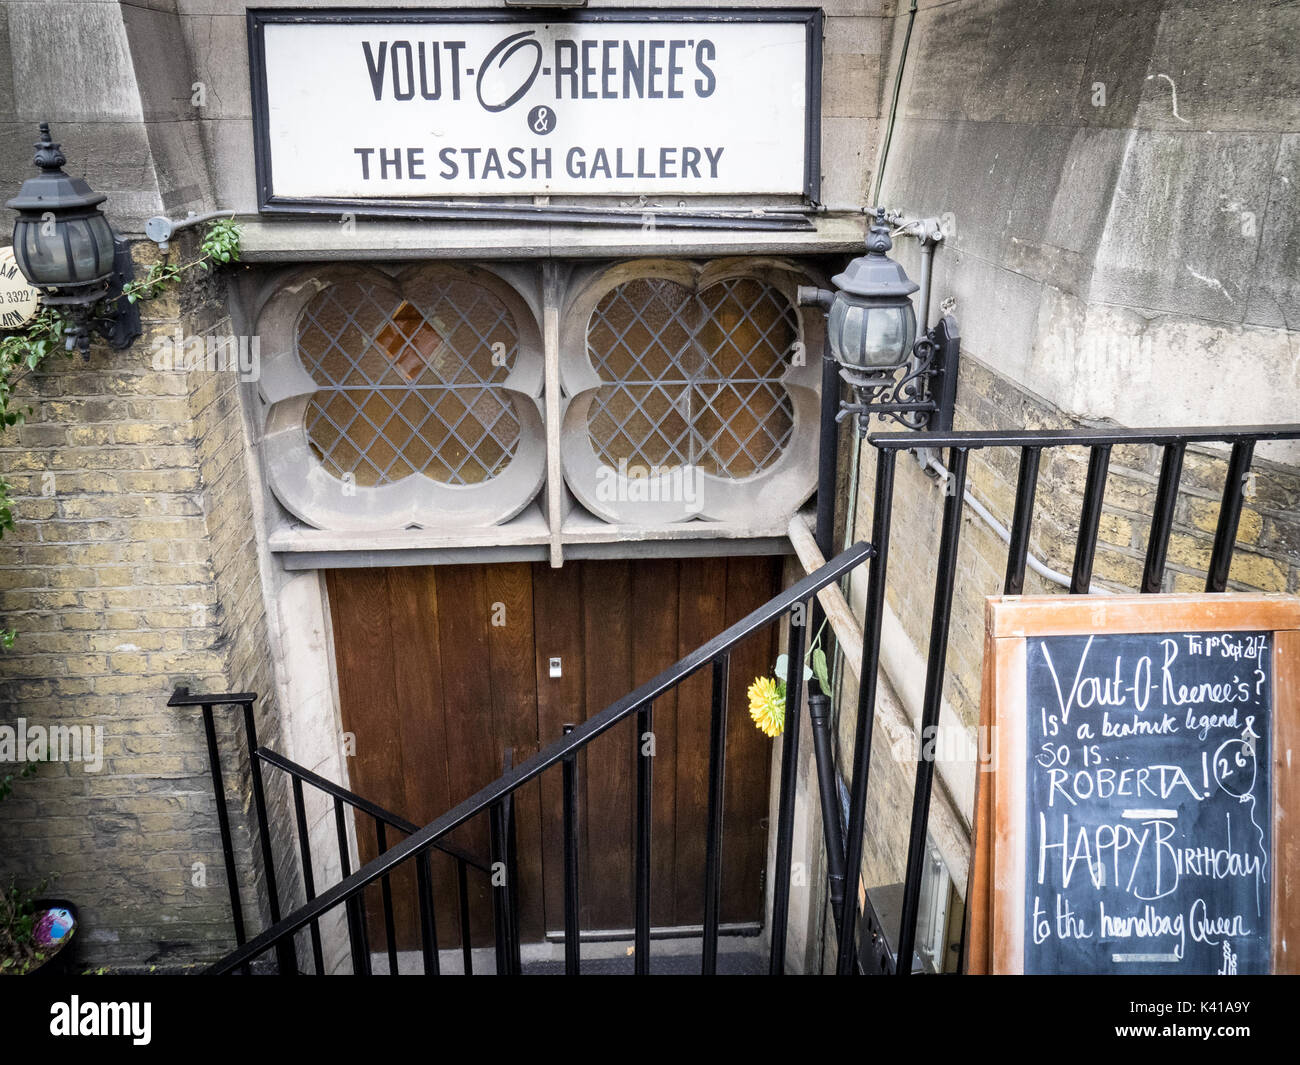 Vout-O-REENEE's - un club privé surréaliste et gallery situé dans la crypte, Prescott Street, East London. Banque D'Images